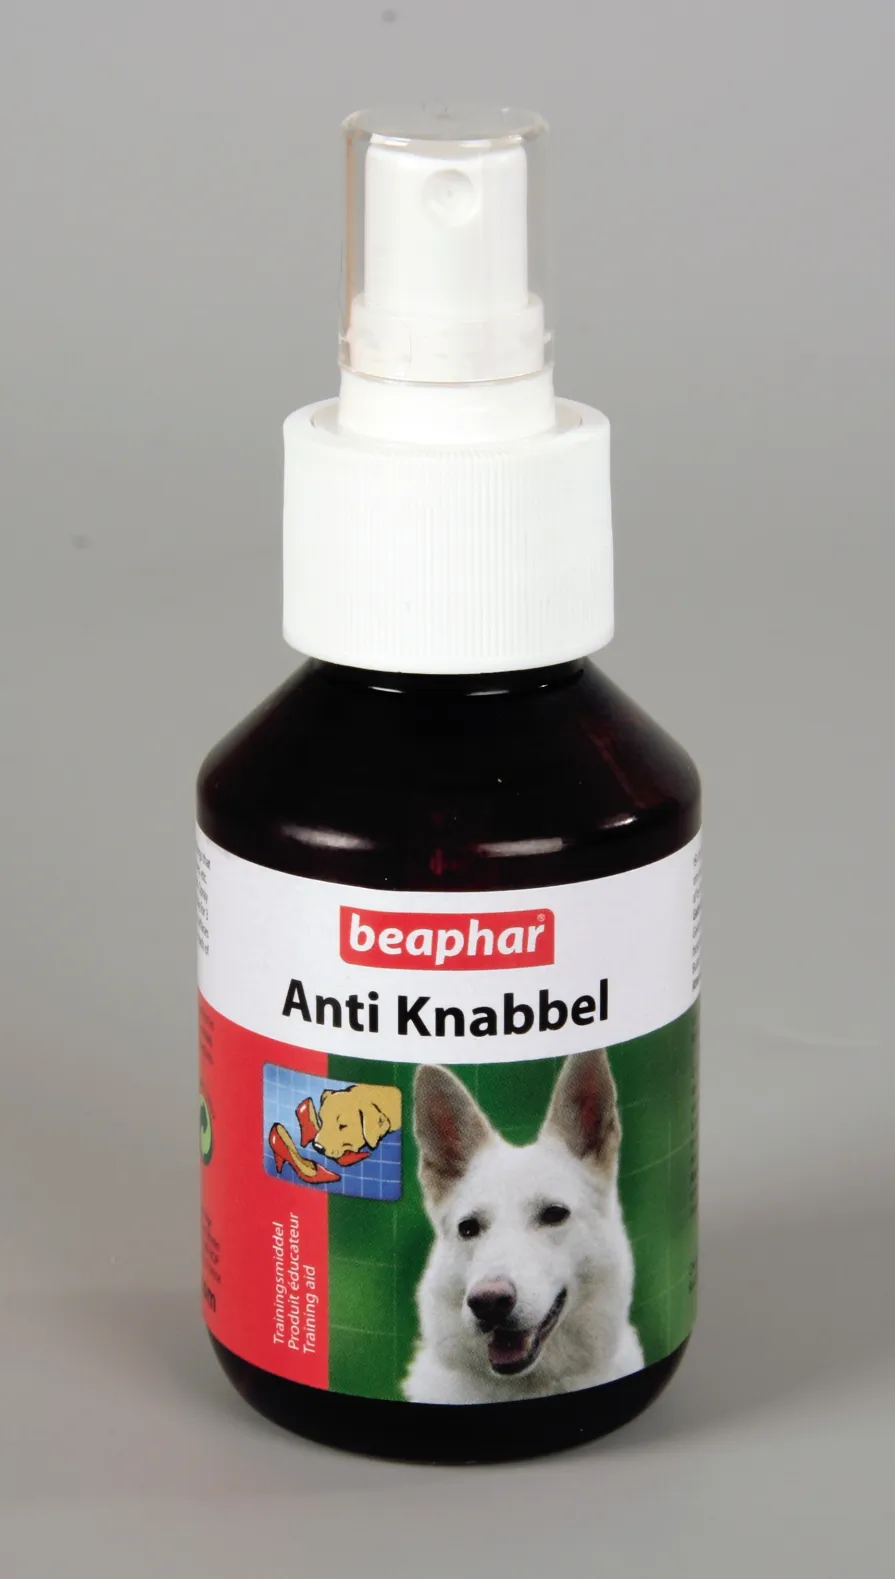 Beaphar Anti Knabbel - oтблъскващ спрей за кучета - 100мл.